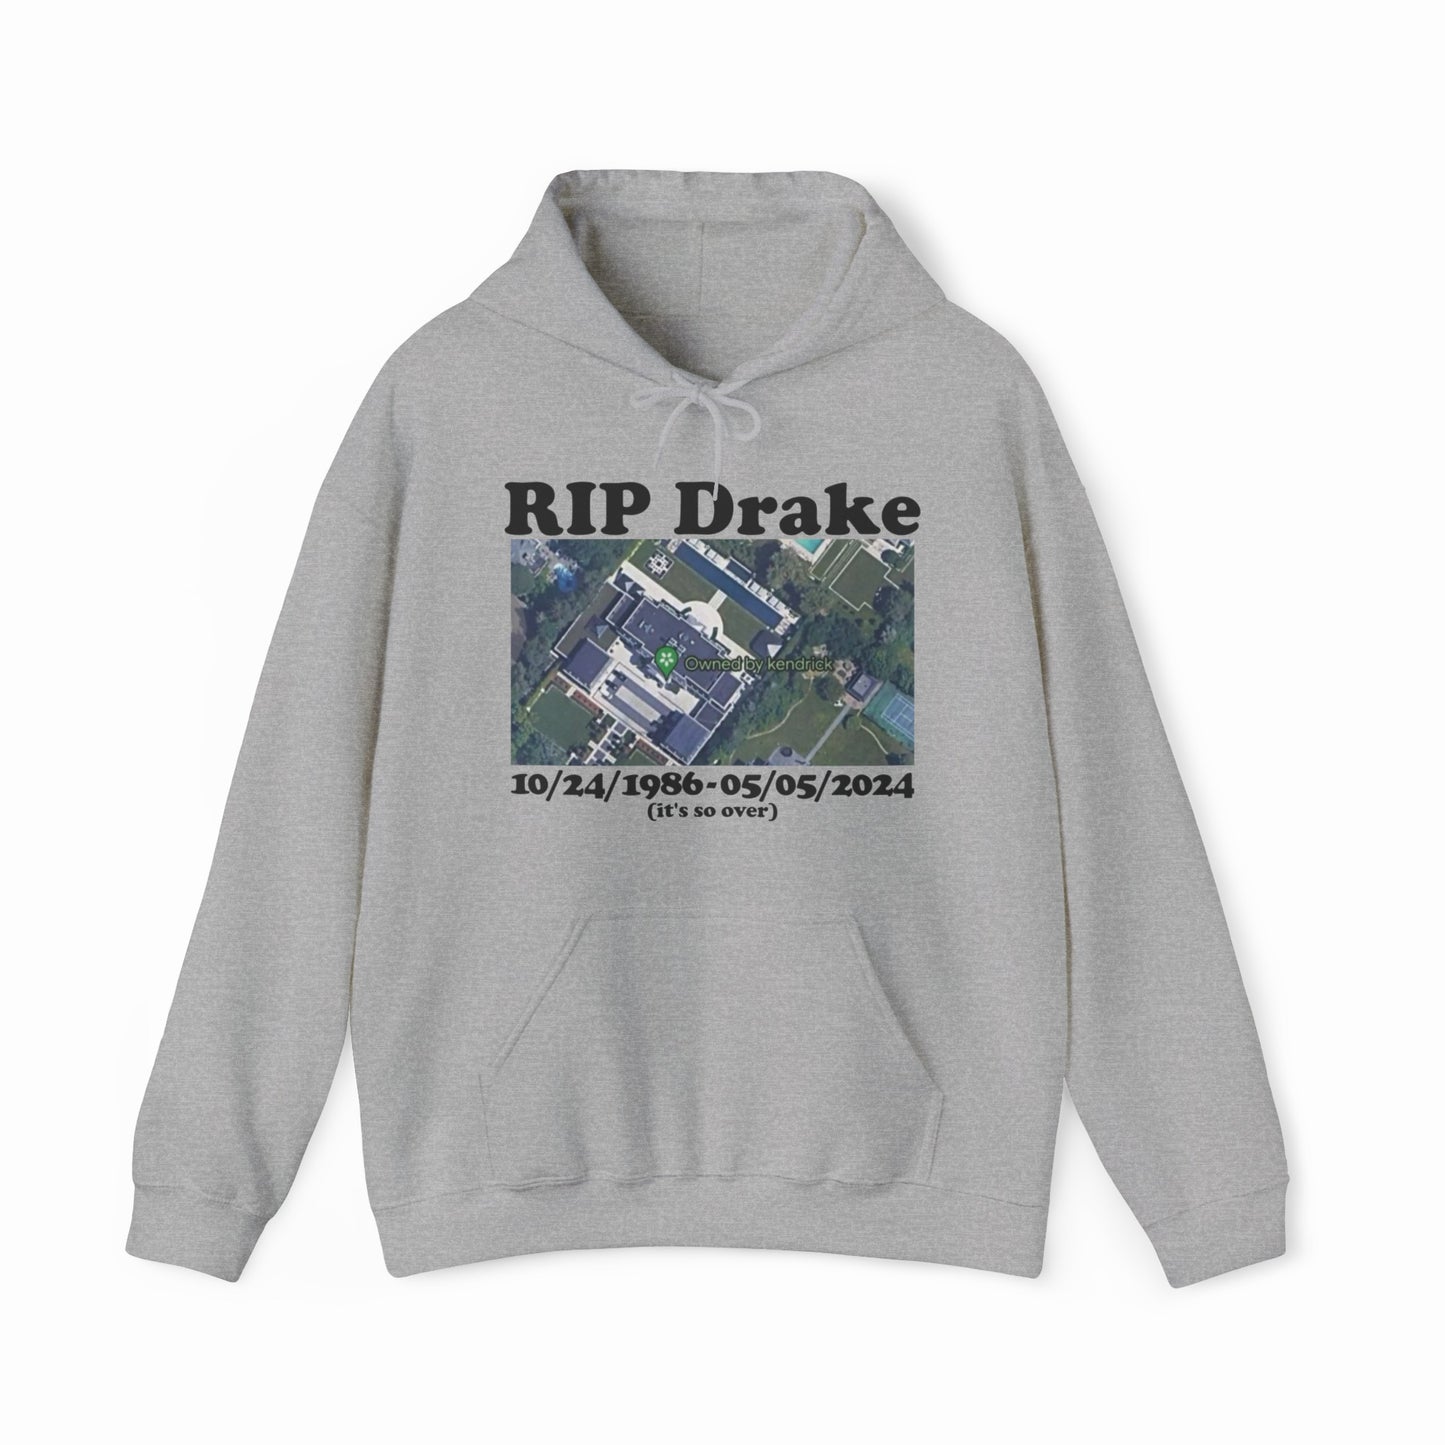 RIP Drake (Owned By Kendrick) Hoodie